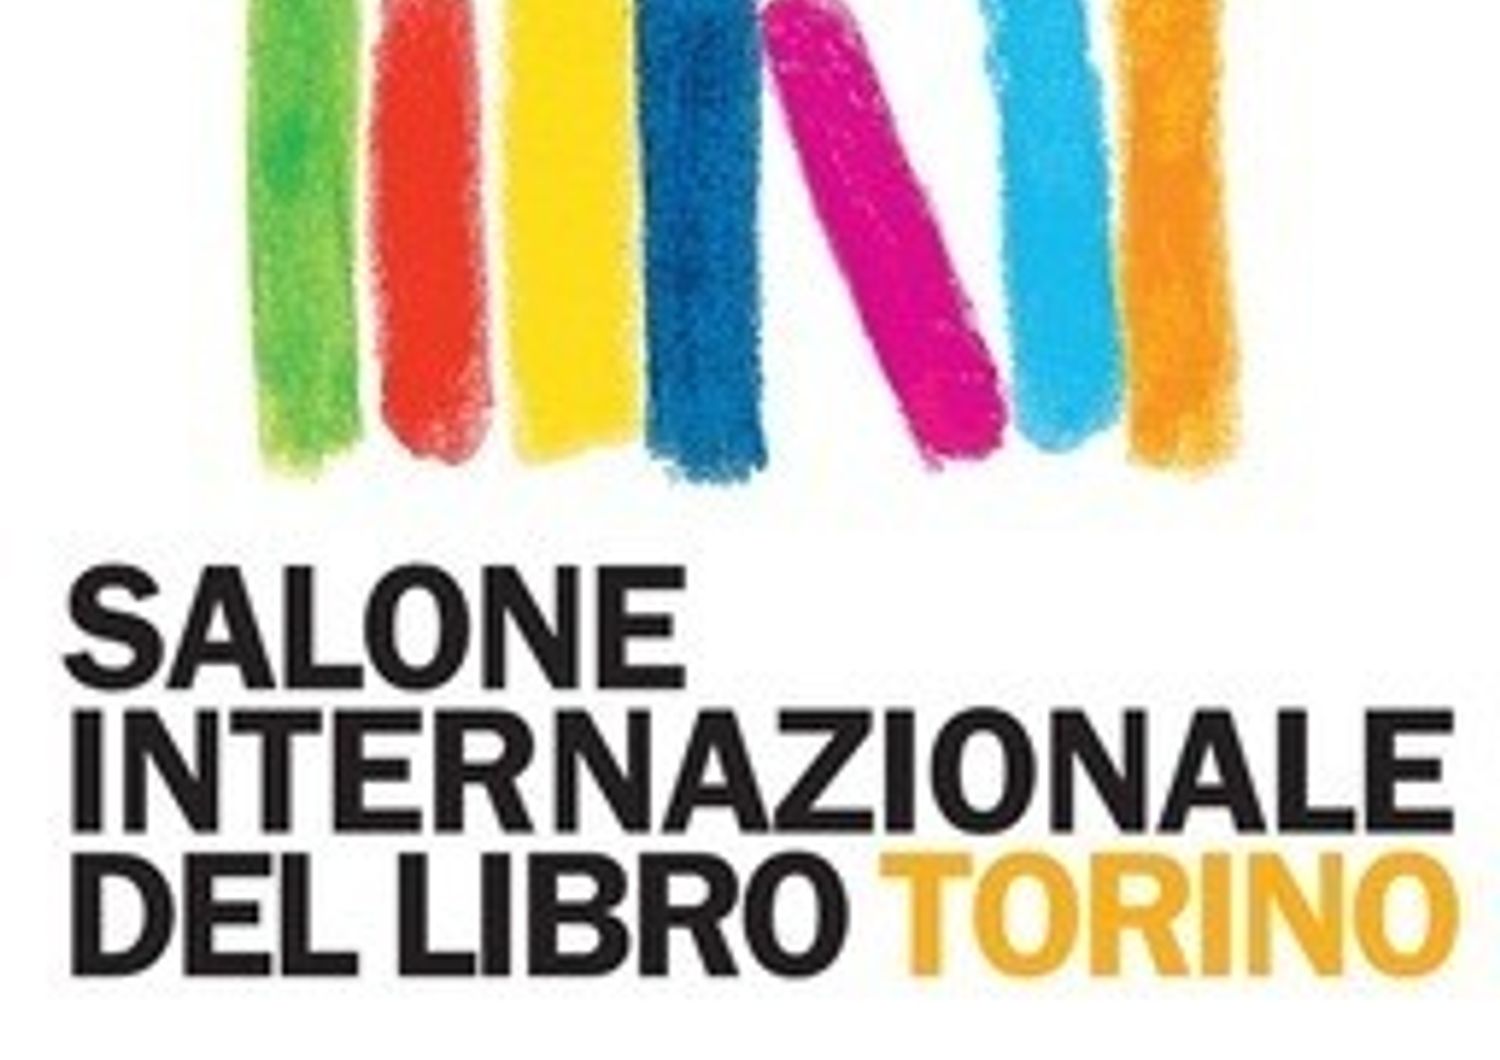 &nbsp;Salone del libro di Torino logo (twitter)